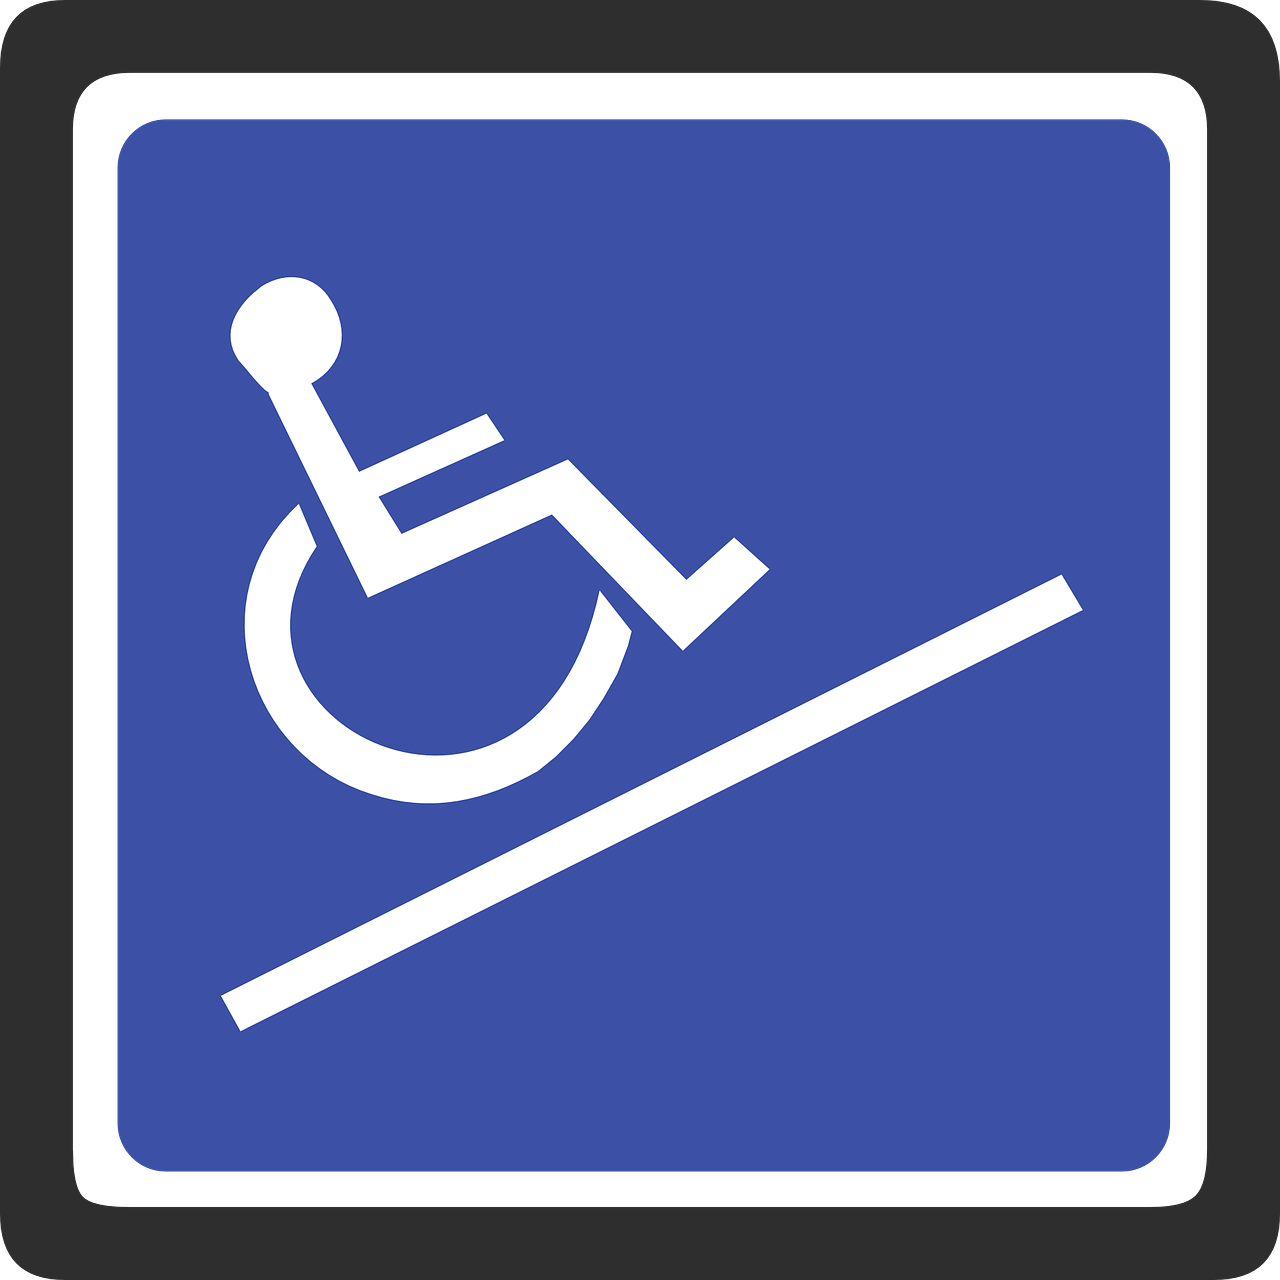 Haven De Woonlocatie Gemiva - SVG Groep gehandicaptenzorg ervaringen